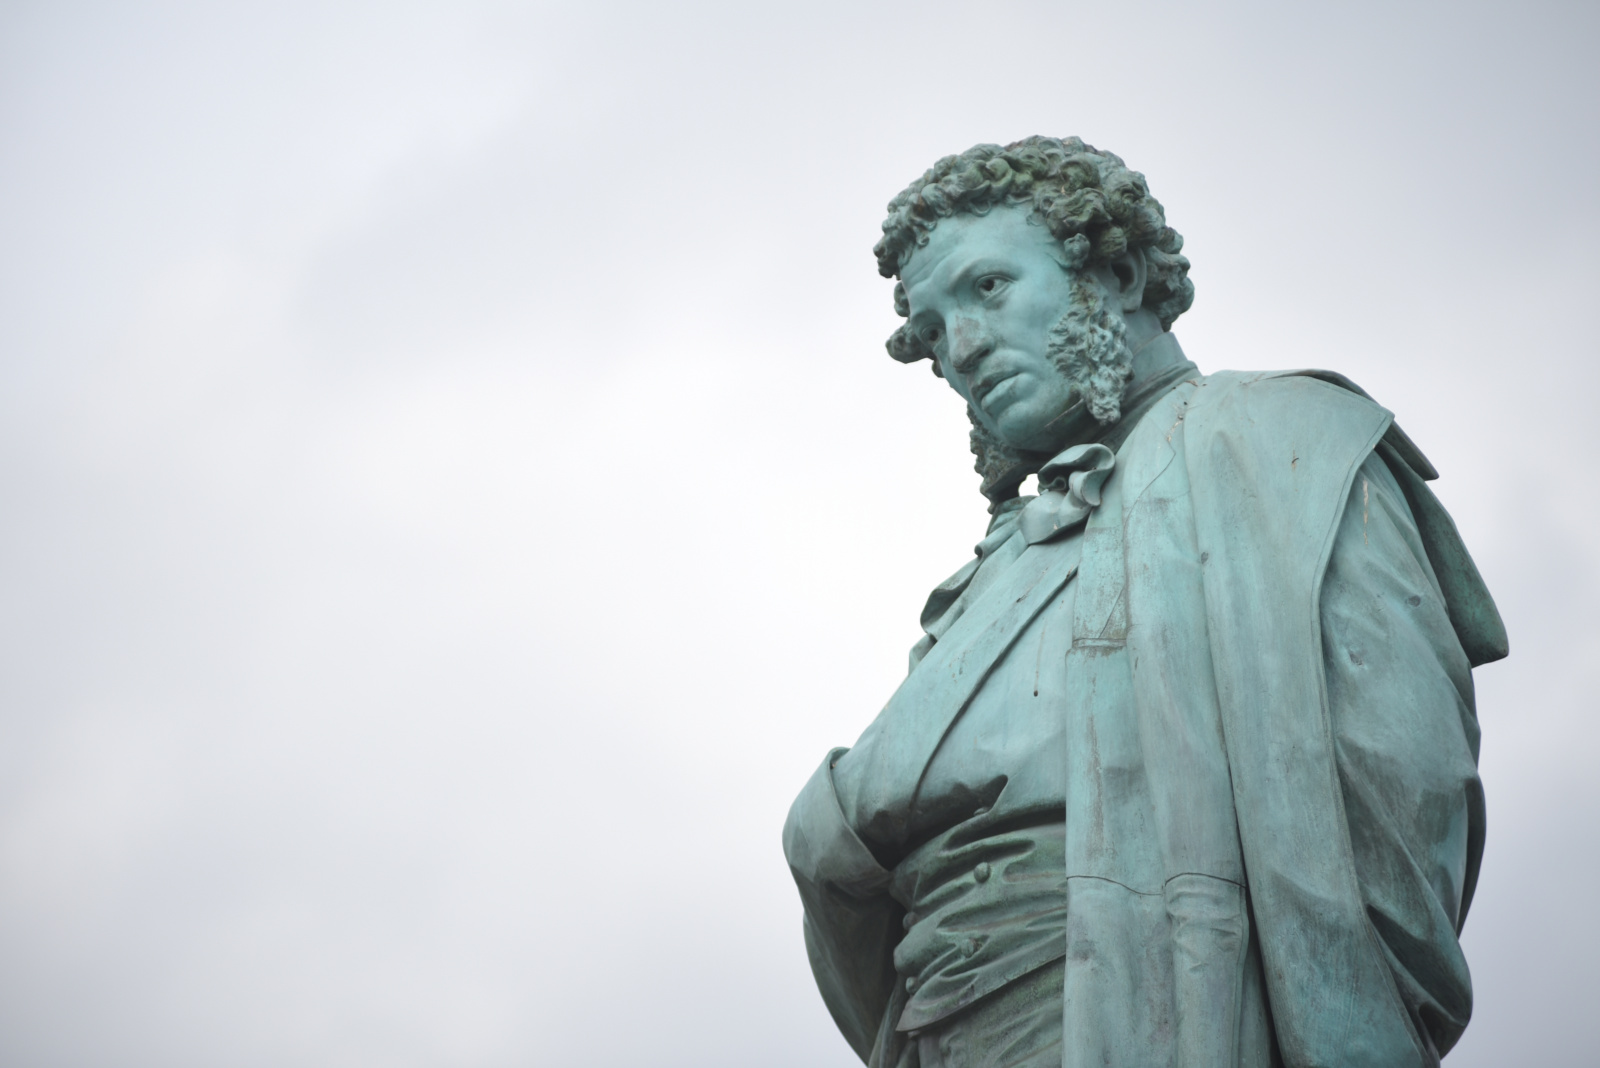 Представители музея-заповедника «Остафьево» рассказали о памятнике Александру Пушкину